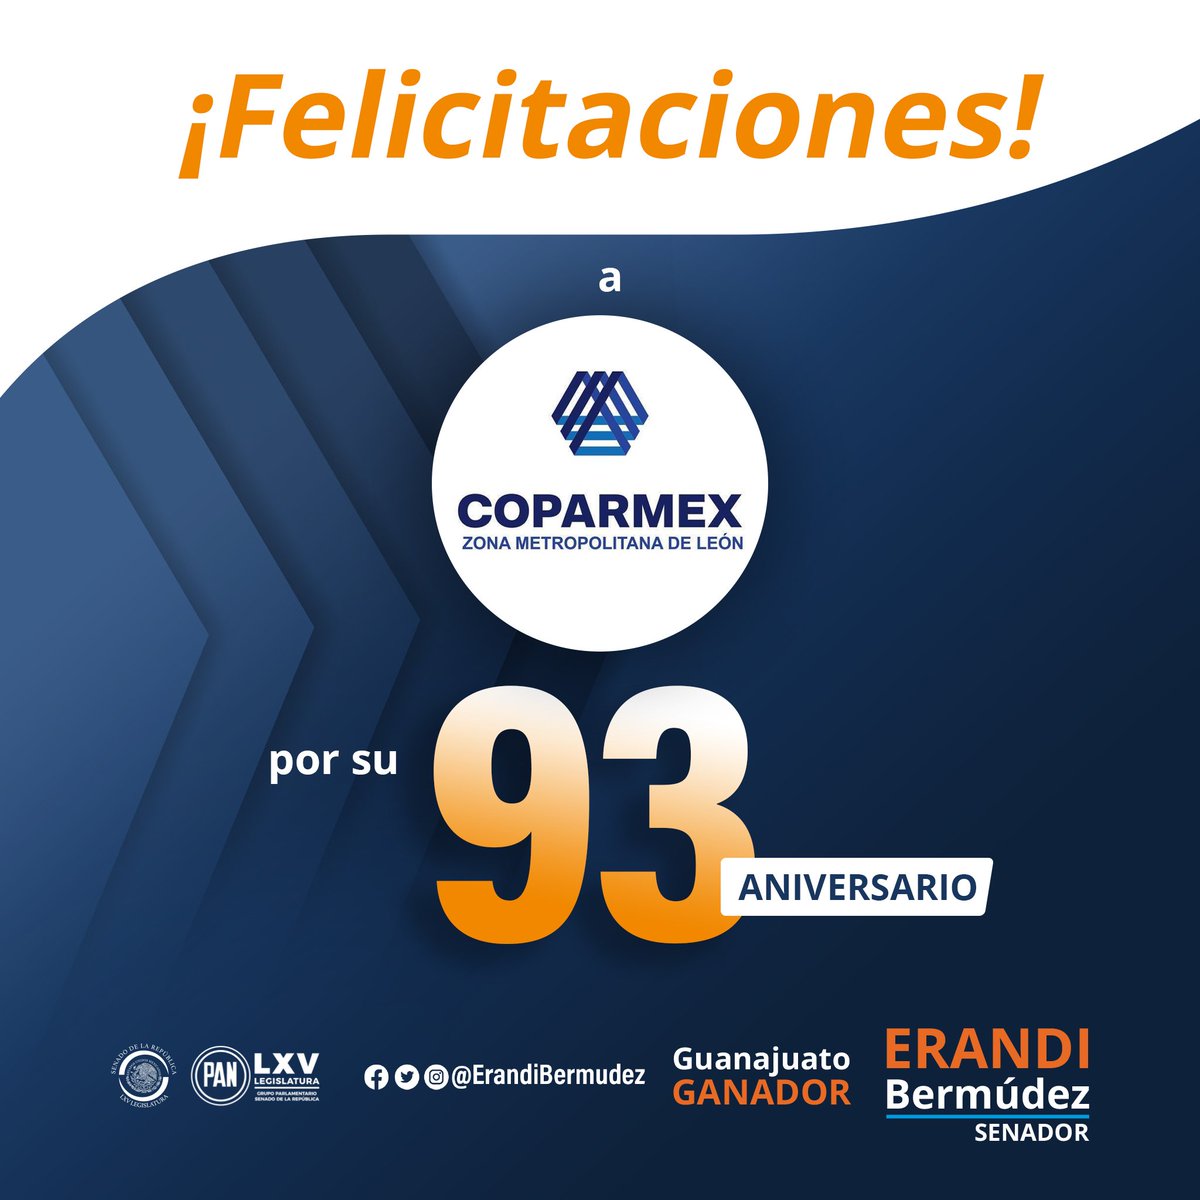 Muchas felicidades por el #93aniversario de la @COPARMEX_LEON, una institución que contribuye en el desarrollo empresarial y económico de nuestro #GuanajuatoGanador. ¡Enhorabuena! Que sigan los éxitos. #CoparmexZNdeLeón